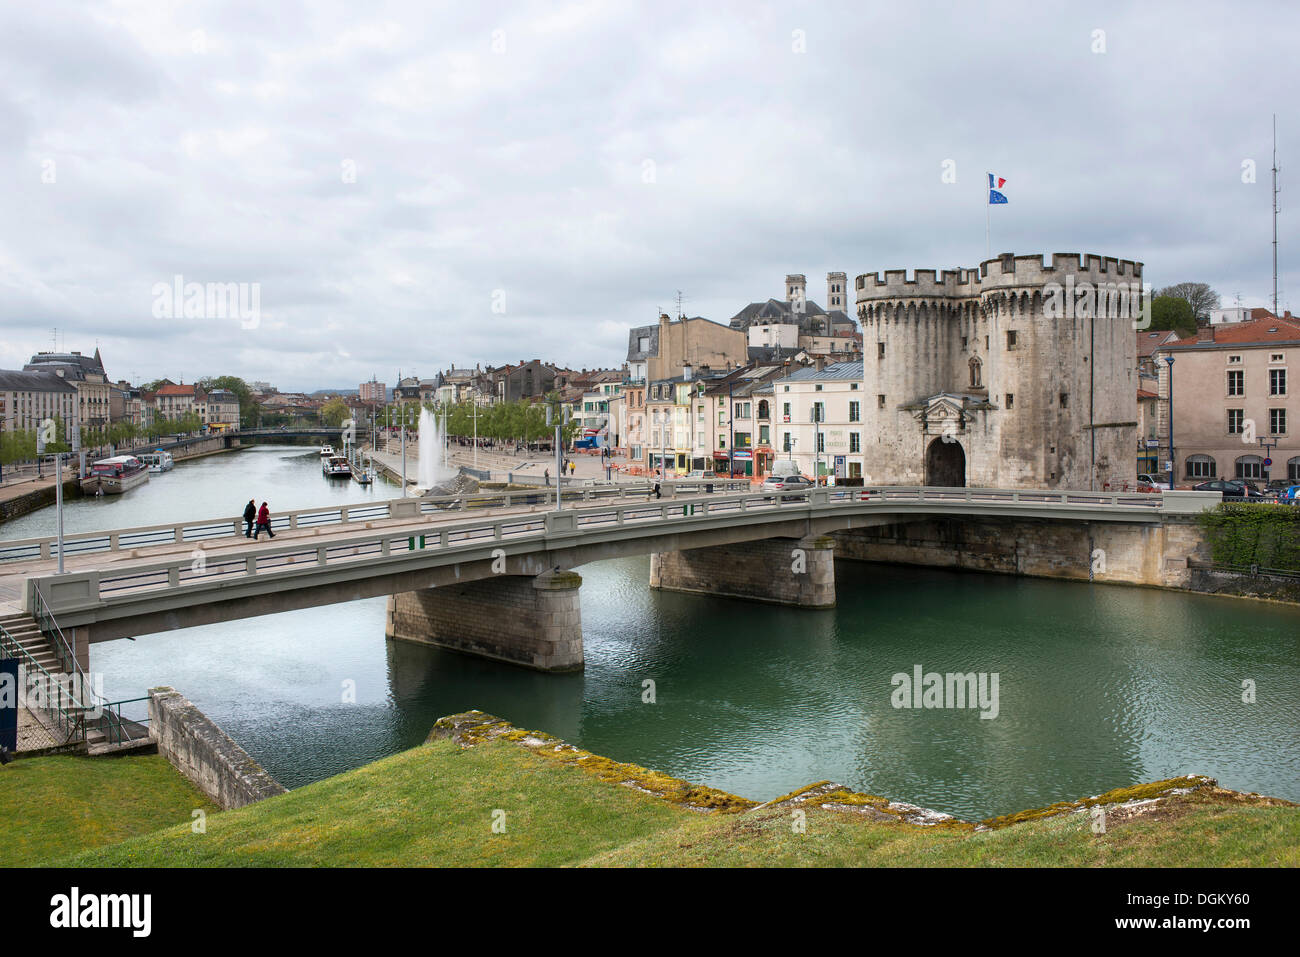 La Meuse avec un pont routier, porte de la ville historique et les maisons au bord de l'eau, Verdun, Lorraine, France, Europe Banque D'Images